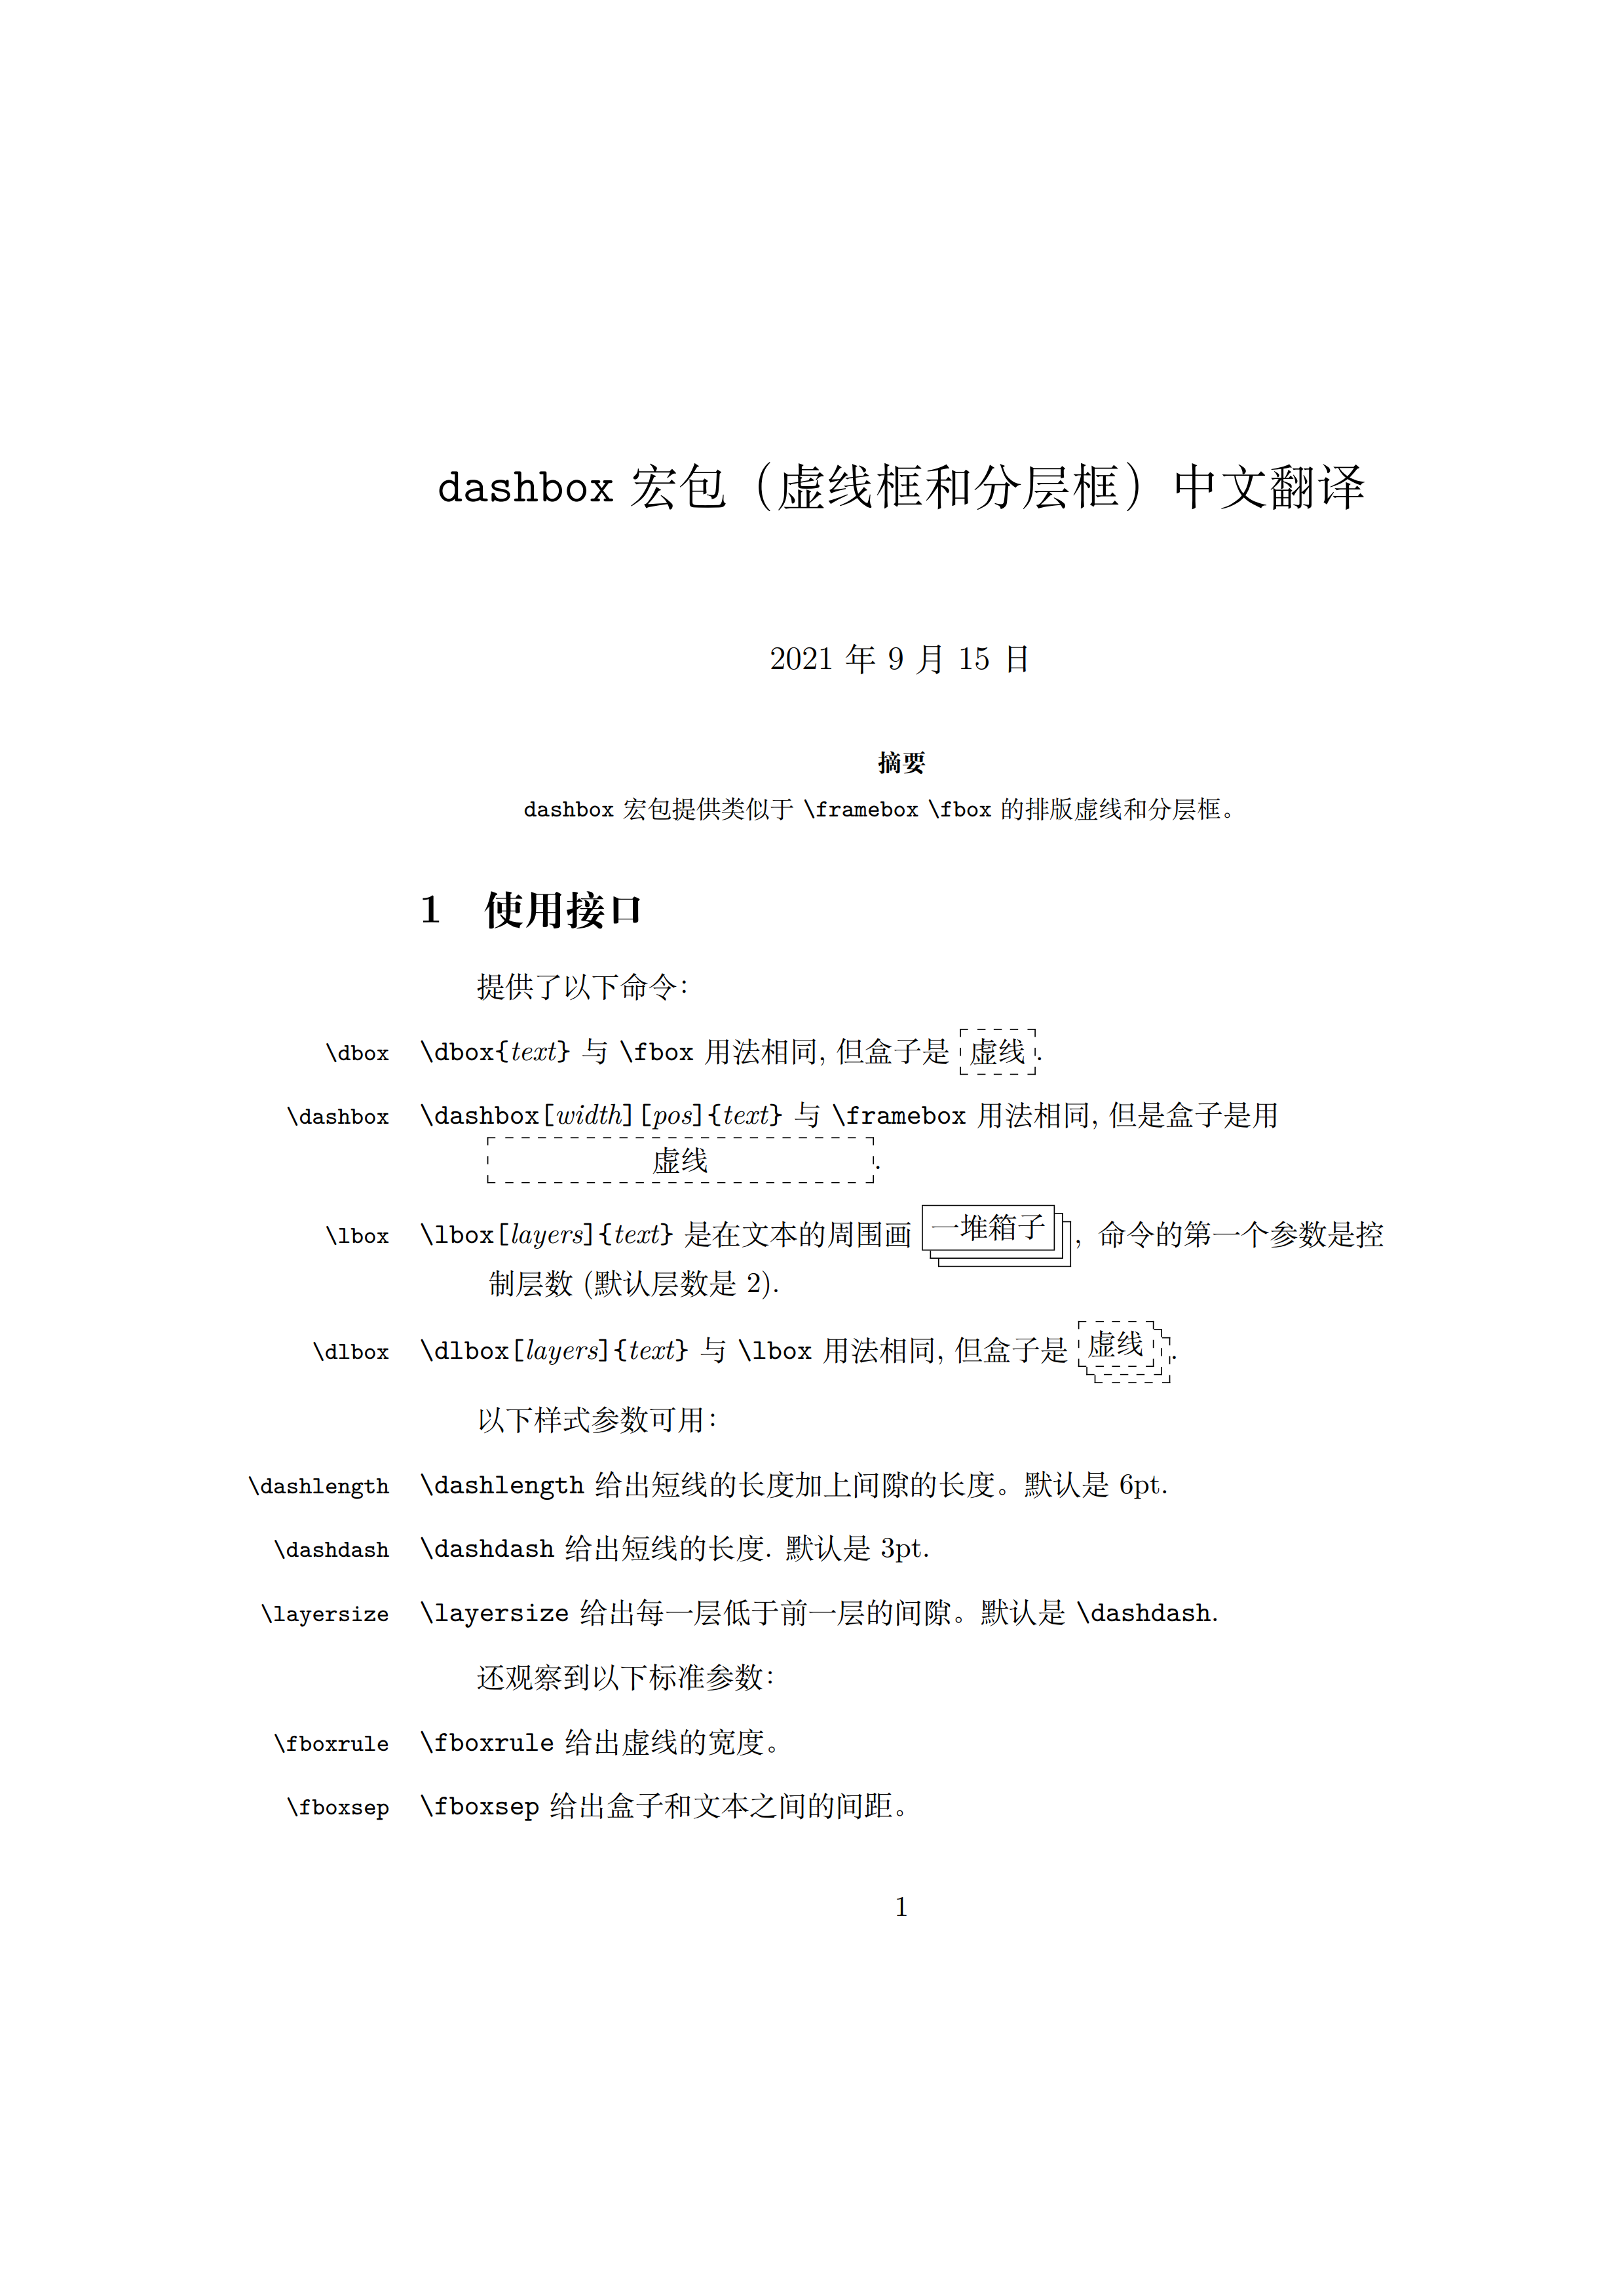 dashbox 宏包（虚线框和分层框）中文翻译